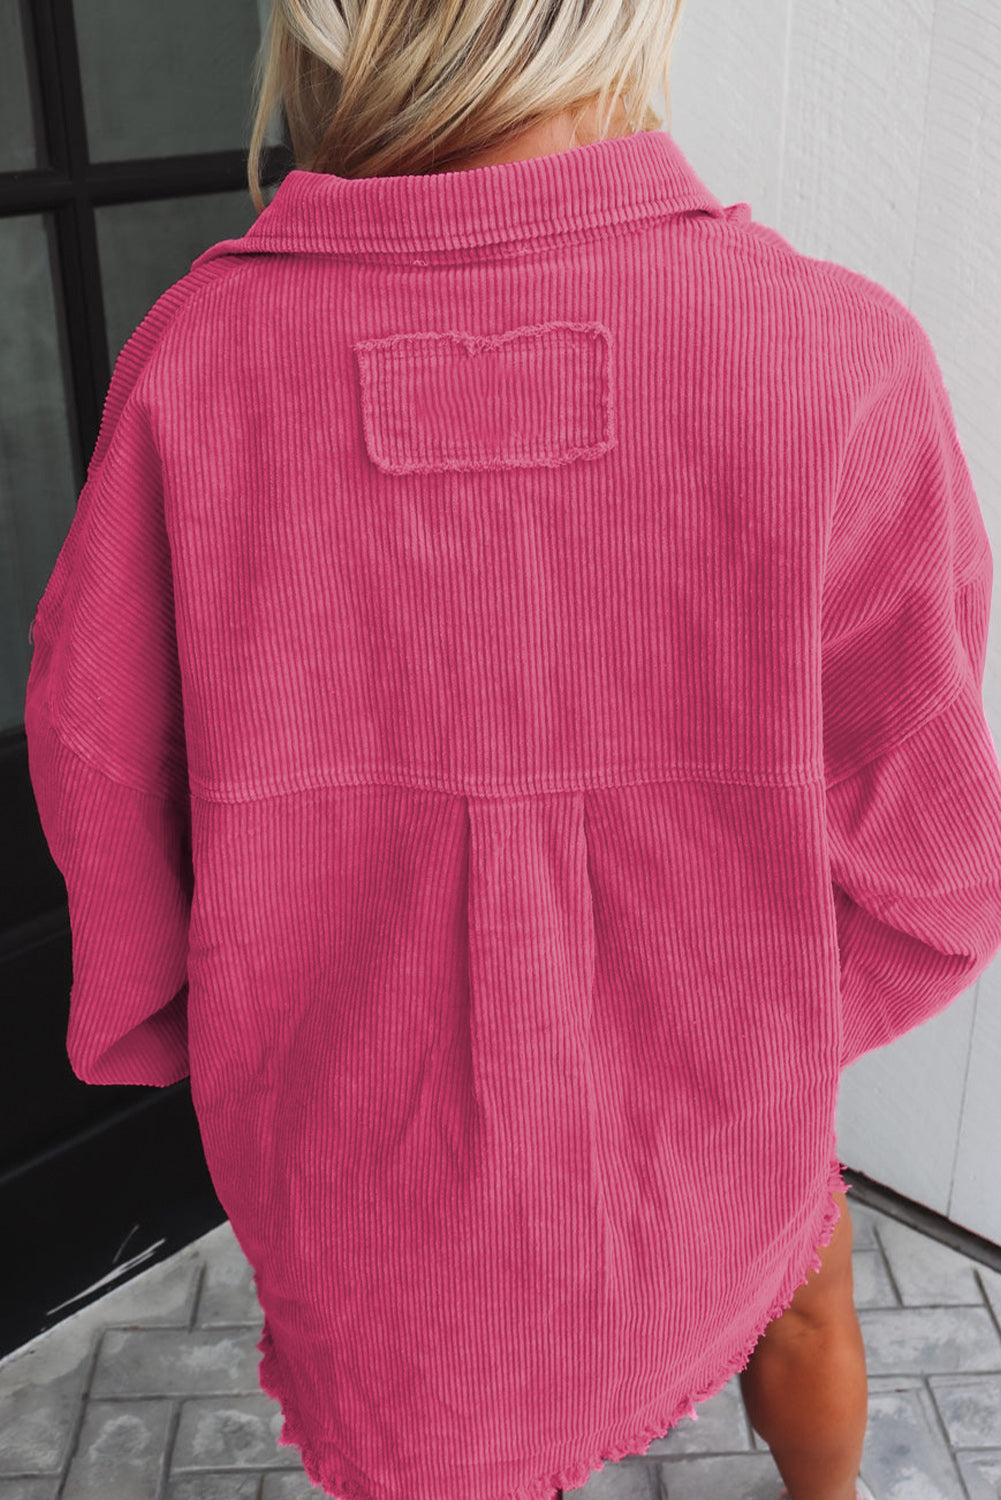 Leuchtend rosafarbene, schnurgebundene Hemdjacke mit unbearbeitetem Saum und zwei Brusttaschen